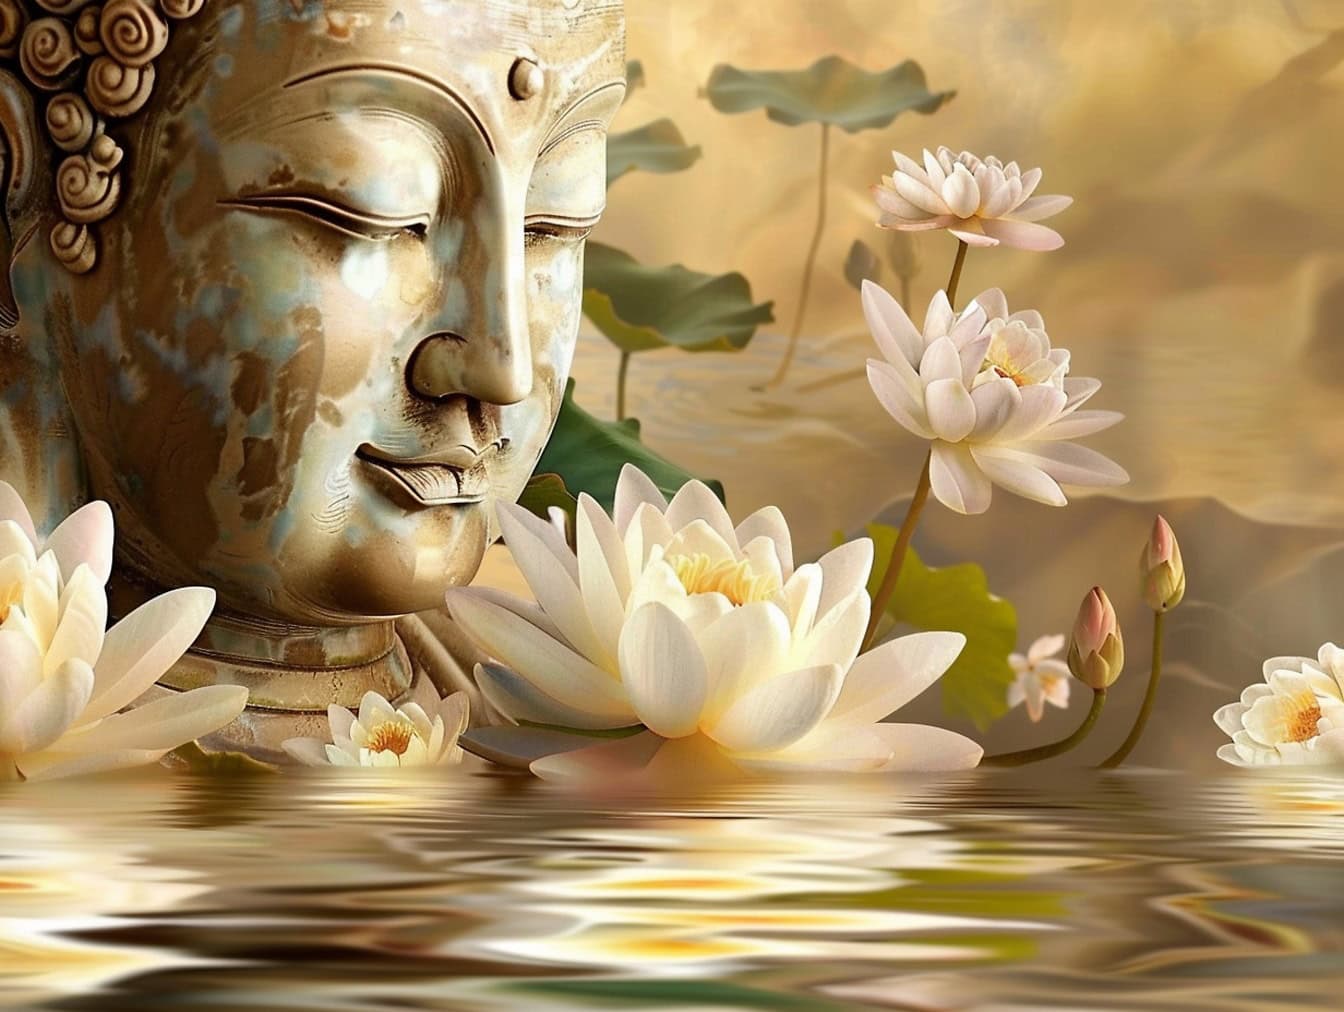 Статуя головы Будды с закрытыми глазами в окружении белых цветов лотоса